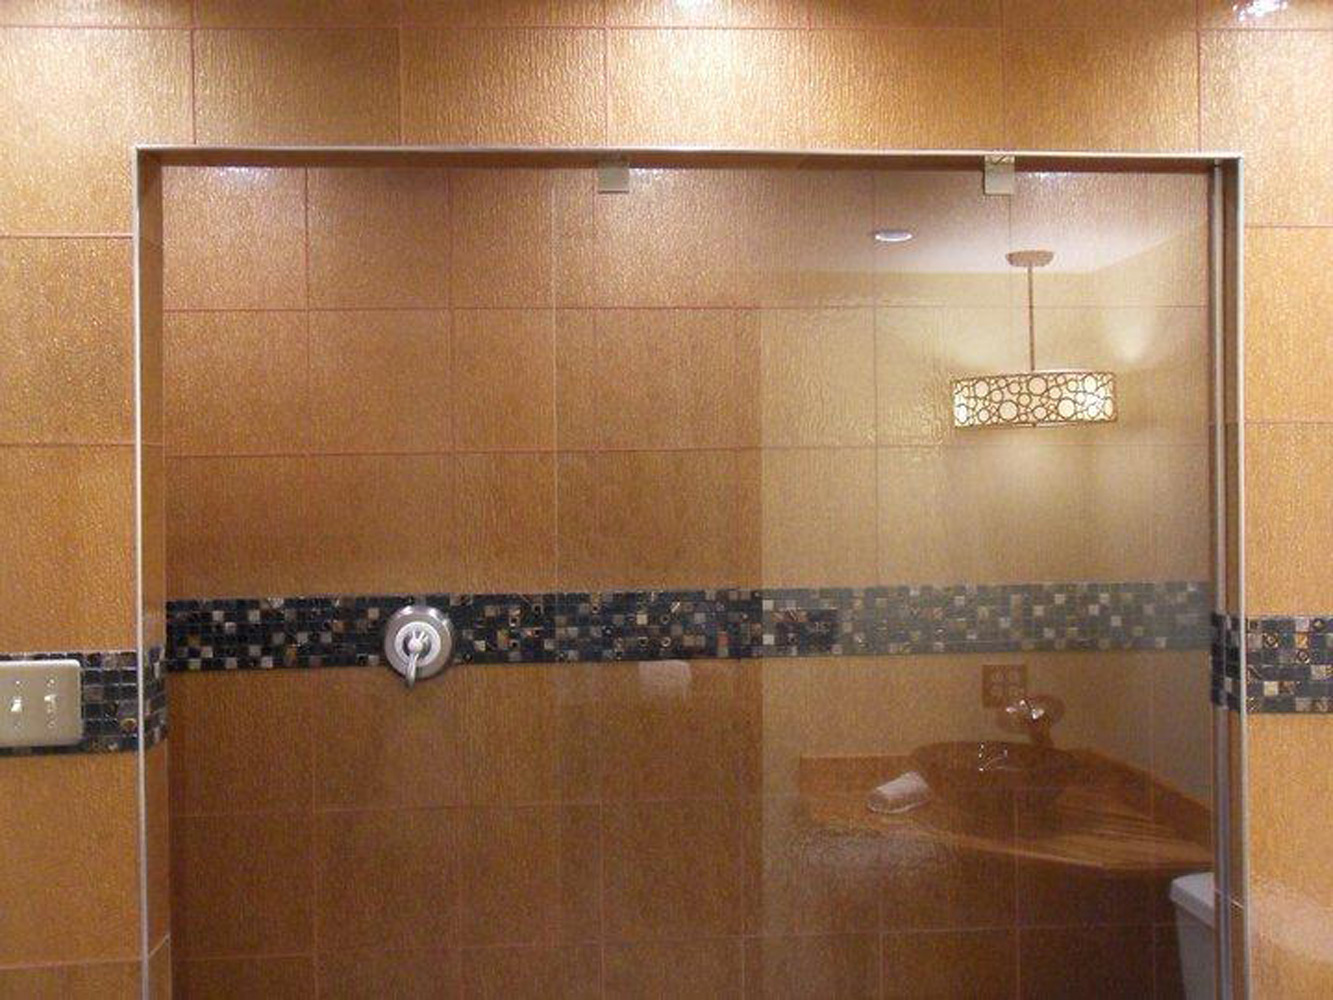 Bathroom Shower Glass Door